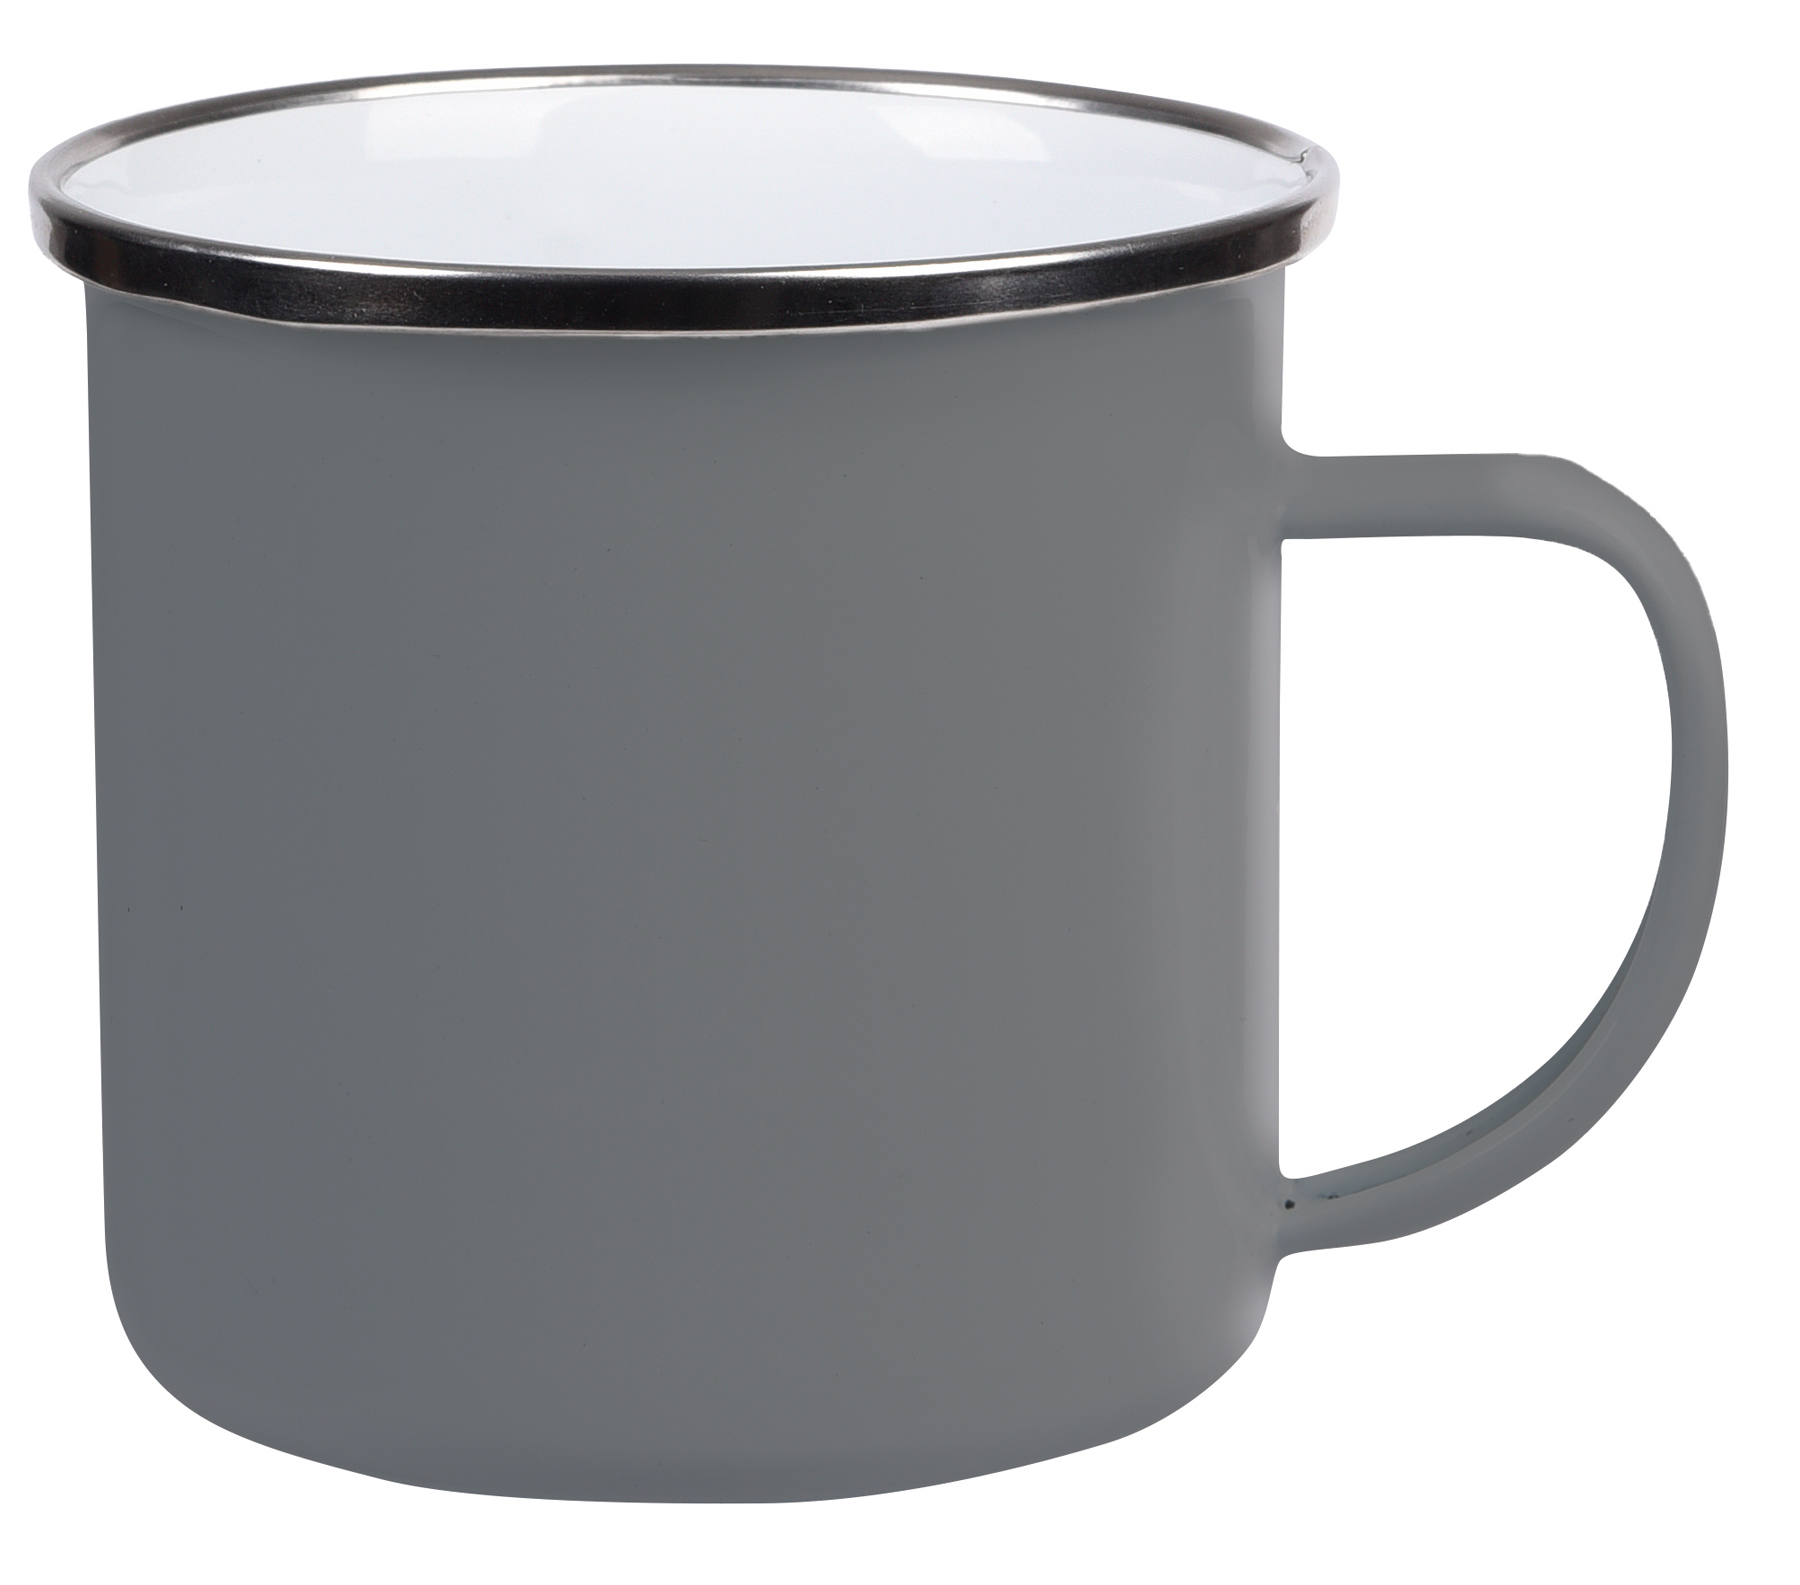 Smaltovaný nápojový hrnek VINTAGE CUP: vyroben z nerezové oceli s uchem, barvená vnější strana s bílým vnitřkem, stříbrný nerezový okraj, kapacita cca. 350 ml  - šedá - foto